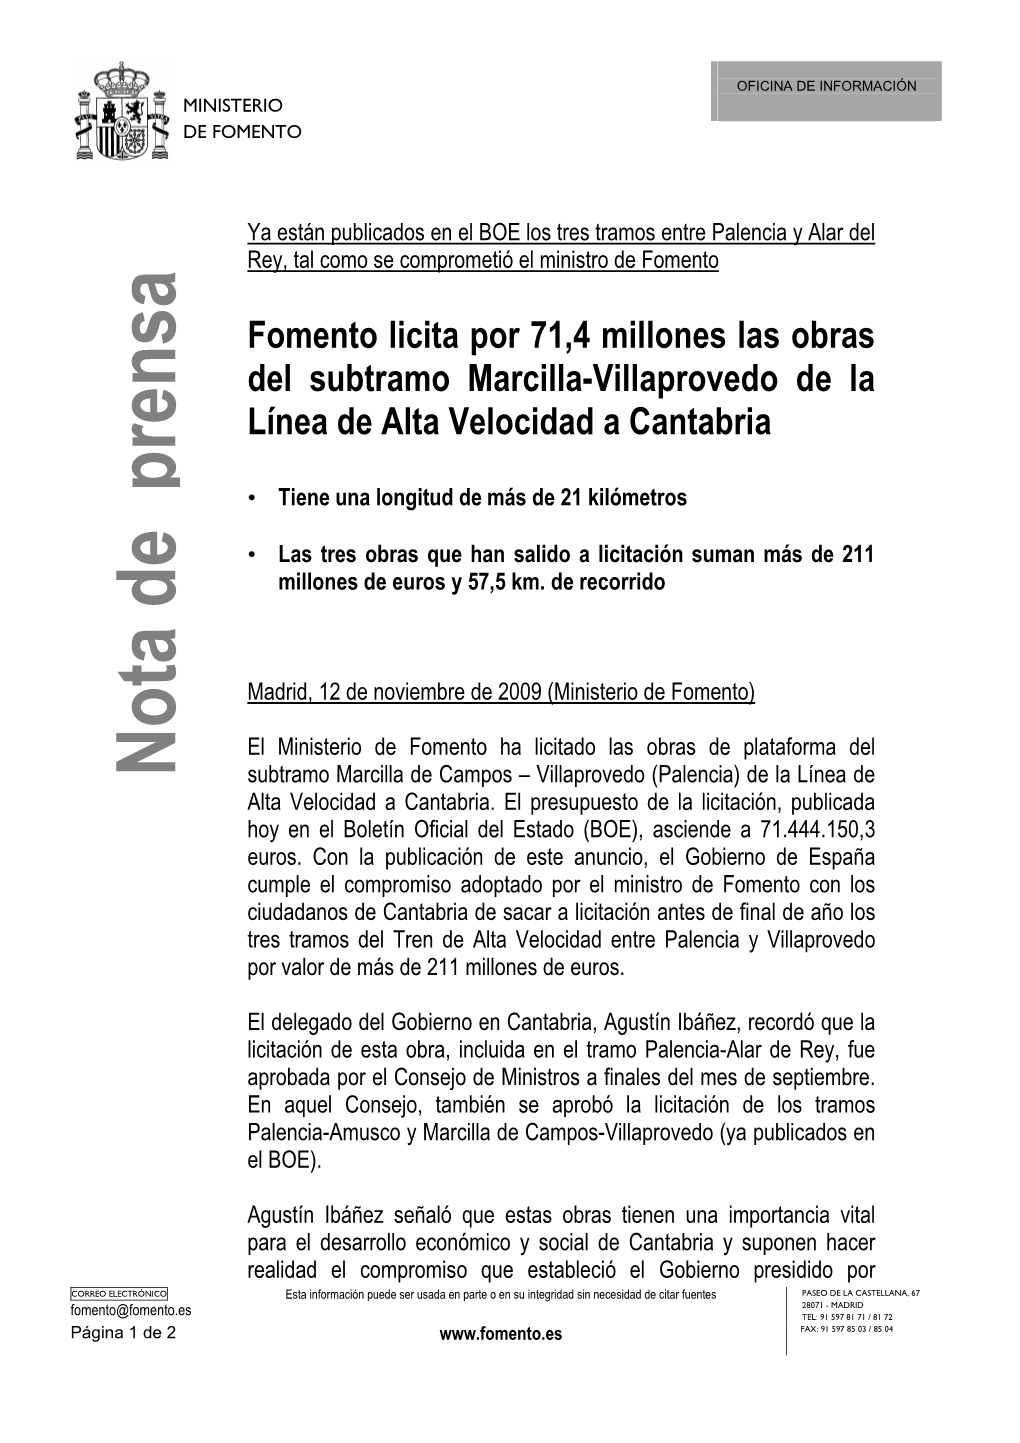 Licitacion LAV Marcilla Campos-Villaprovedo (PDF)